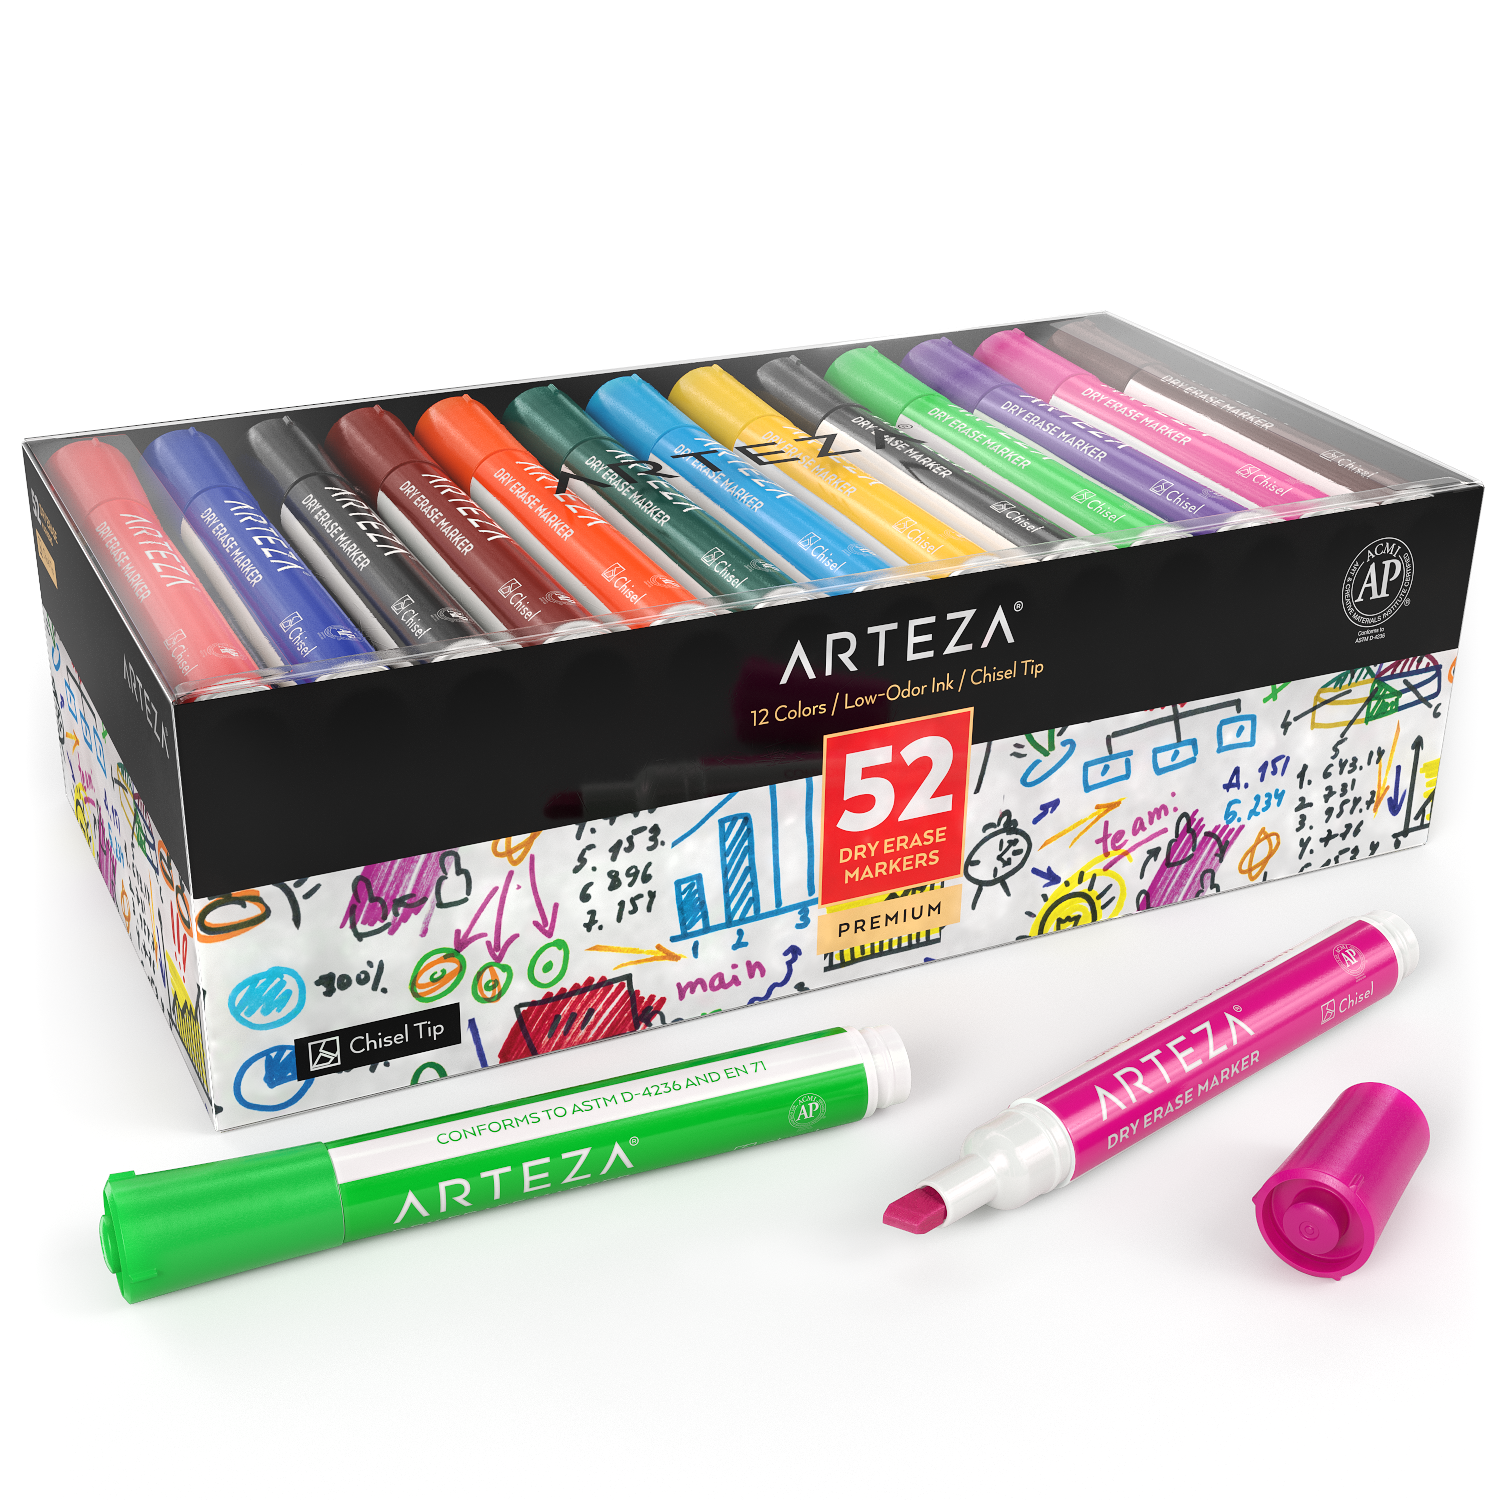 https://arteza.com/cdn/shop/products/dry-erase-markers-set-of-52-12-colors_EAFJ4fi2.png?v=1663348977&width=1946